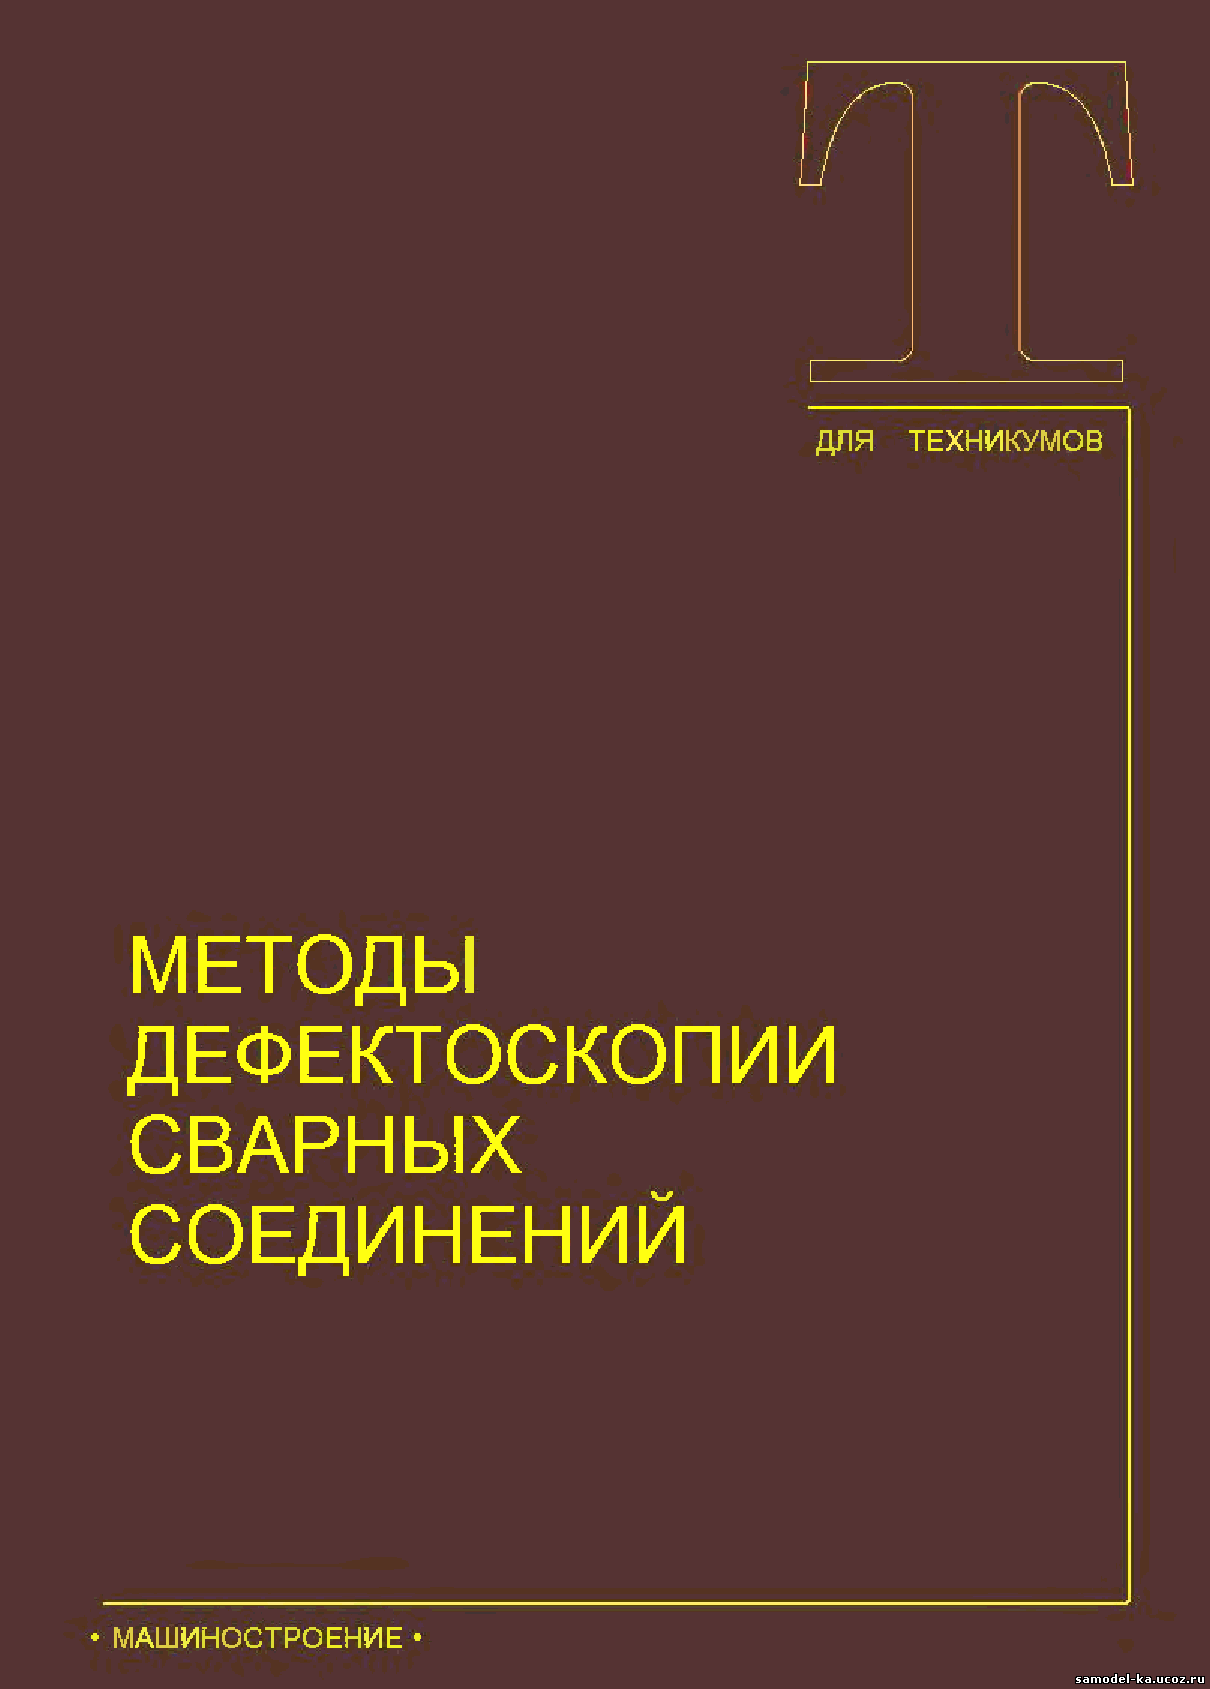 Методы дефектоскопии сварных соединений (1987) В.Г. Щербинский